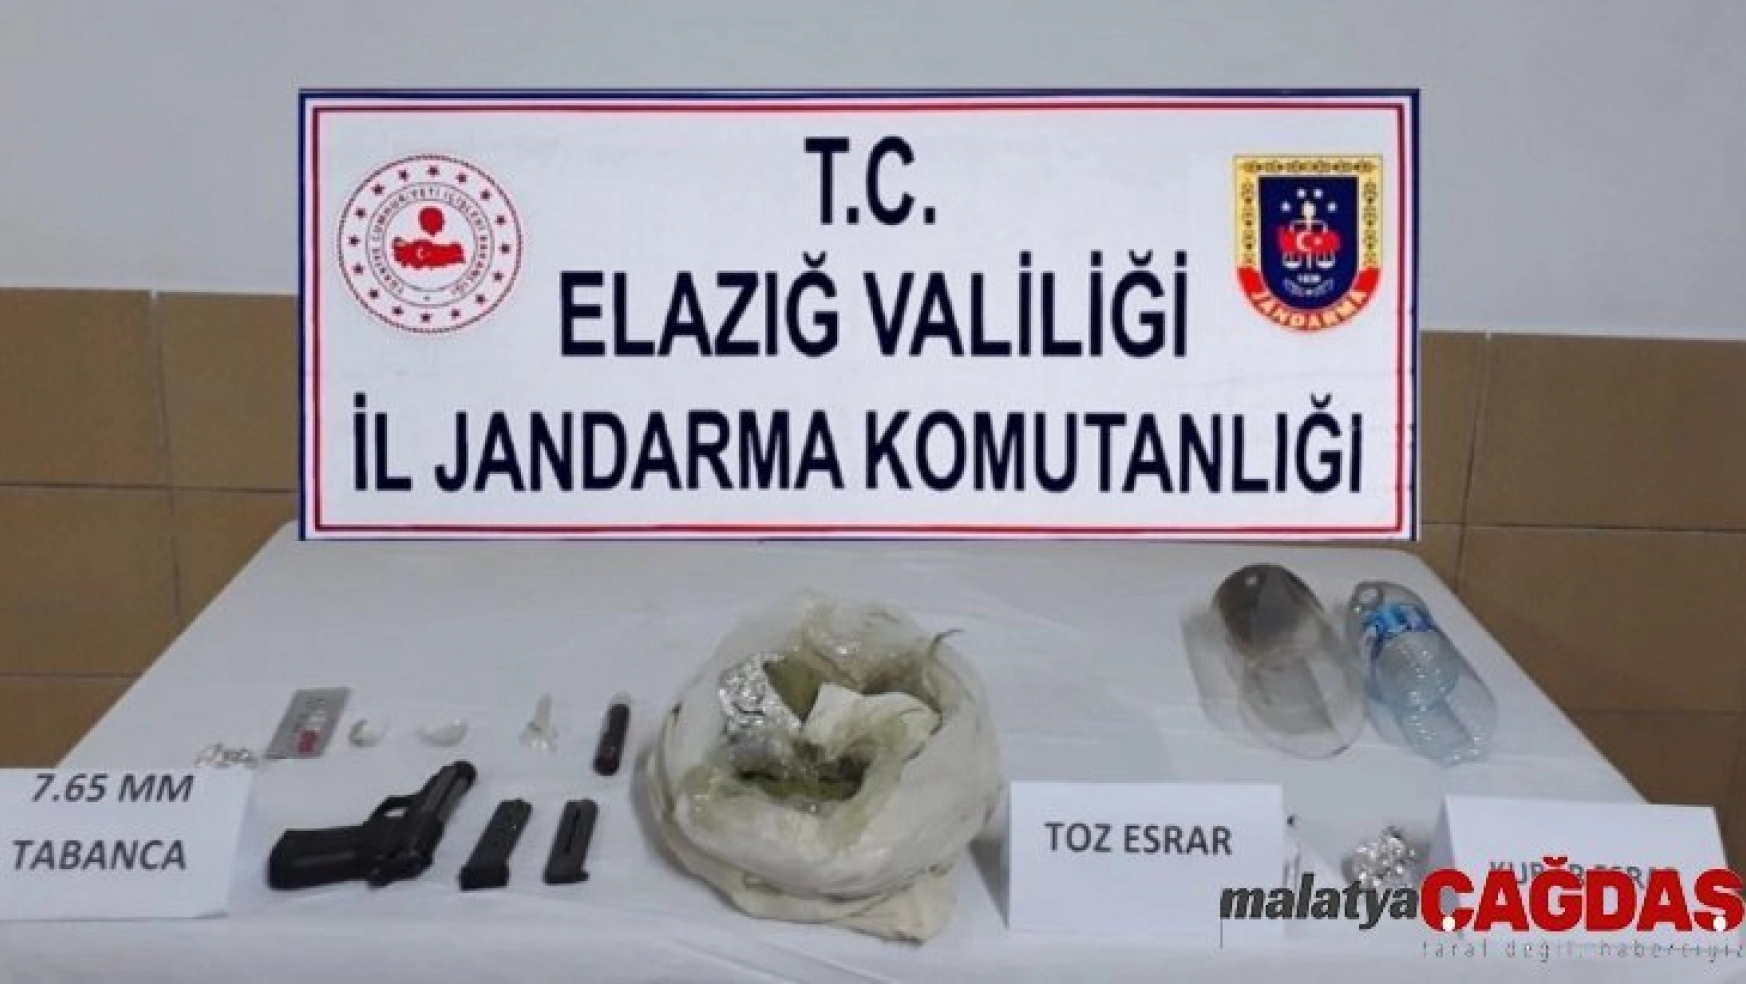 Elazığ'da uyuşturucu operasyonu:1 şüpheli yakalandı